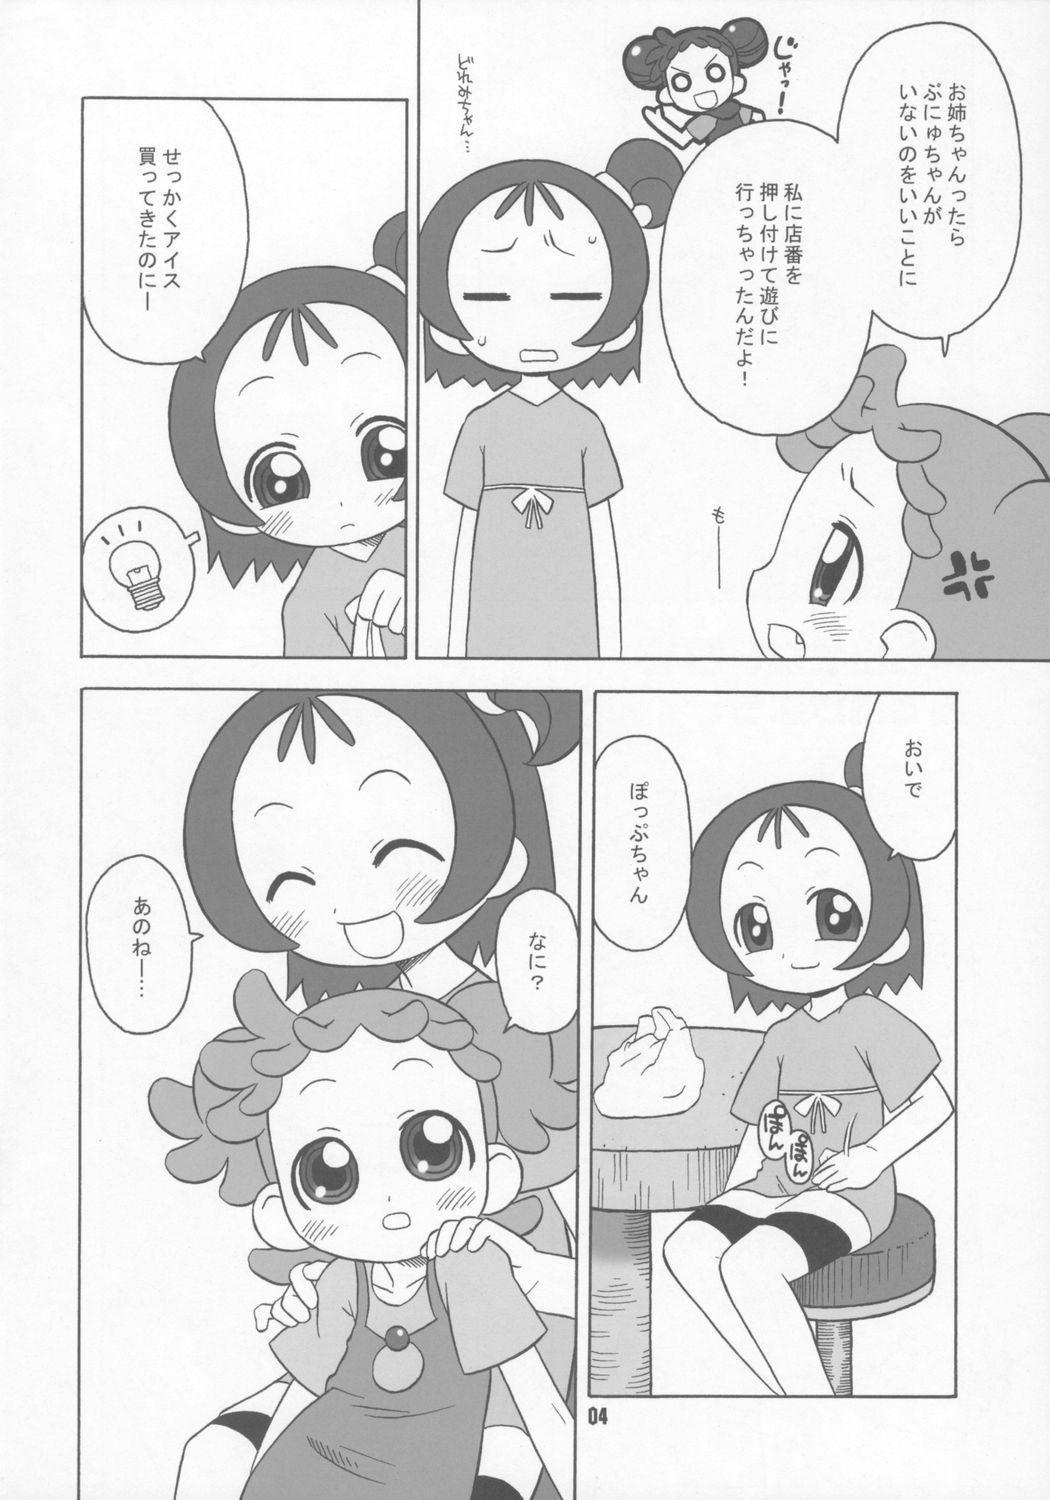 Lingerie Bokura wa mucha mo suru kedo. - Ojamajo doremi Ftv Girls - Page 3